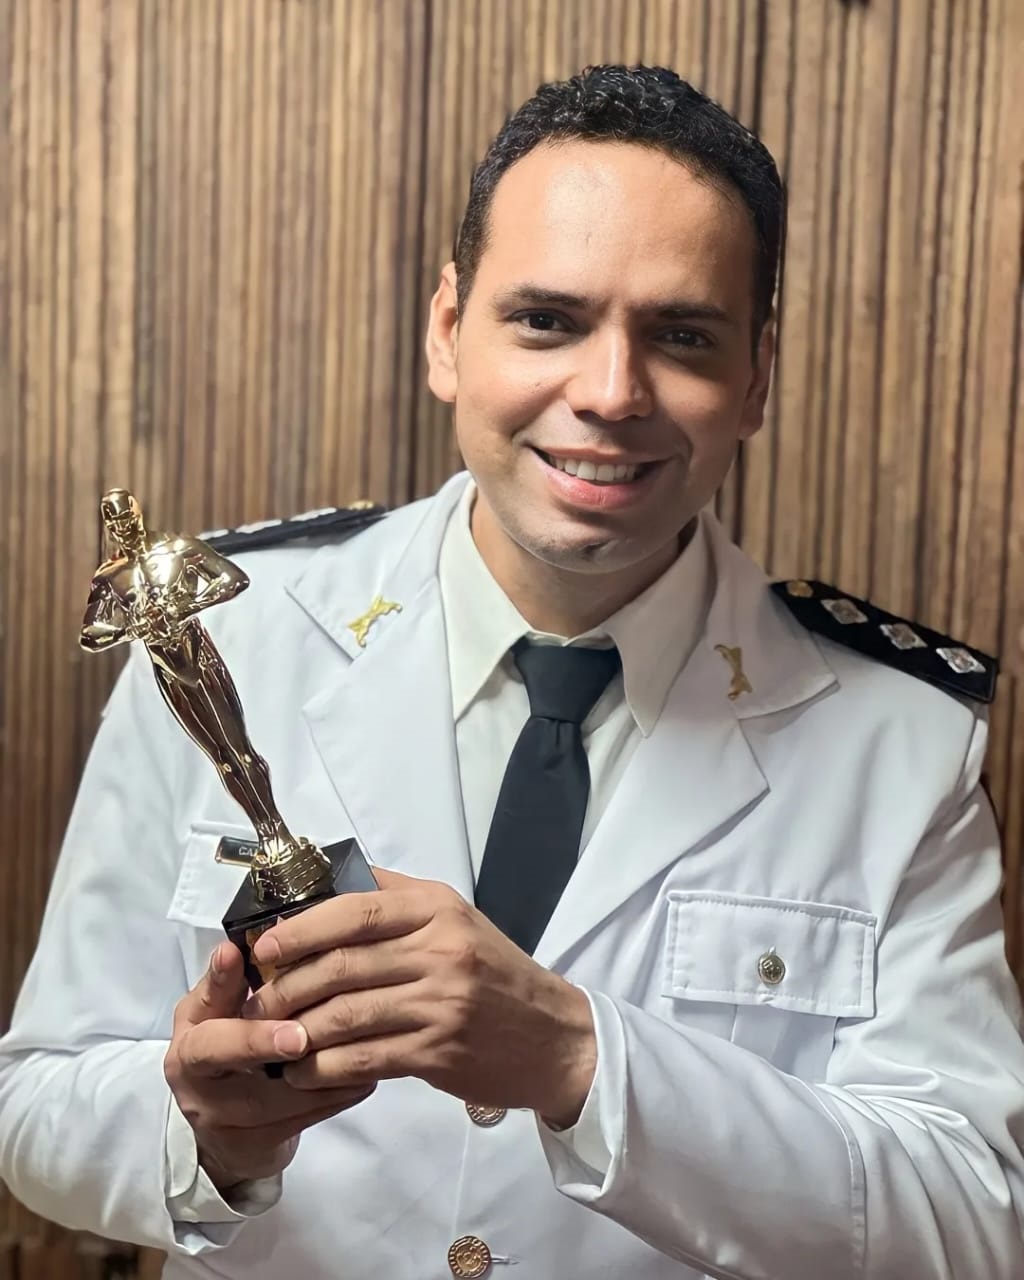 Prêmio ‘Notáveis do ano de Minas Gerais’ homenageia a policial do Norte de Minas